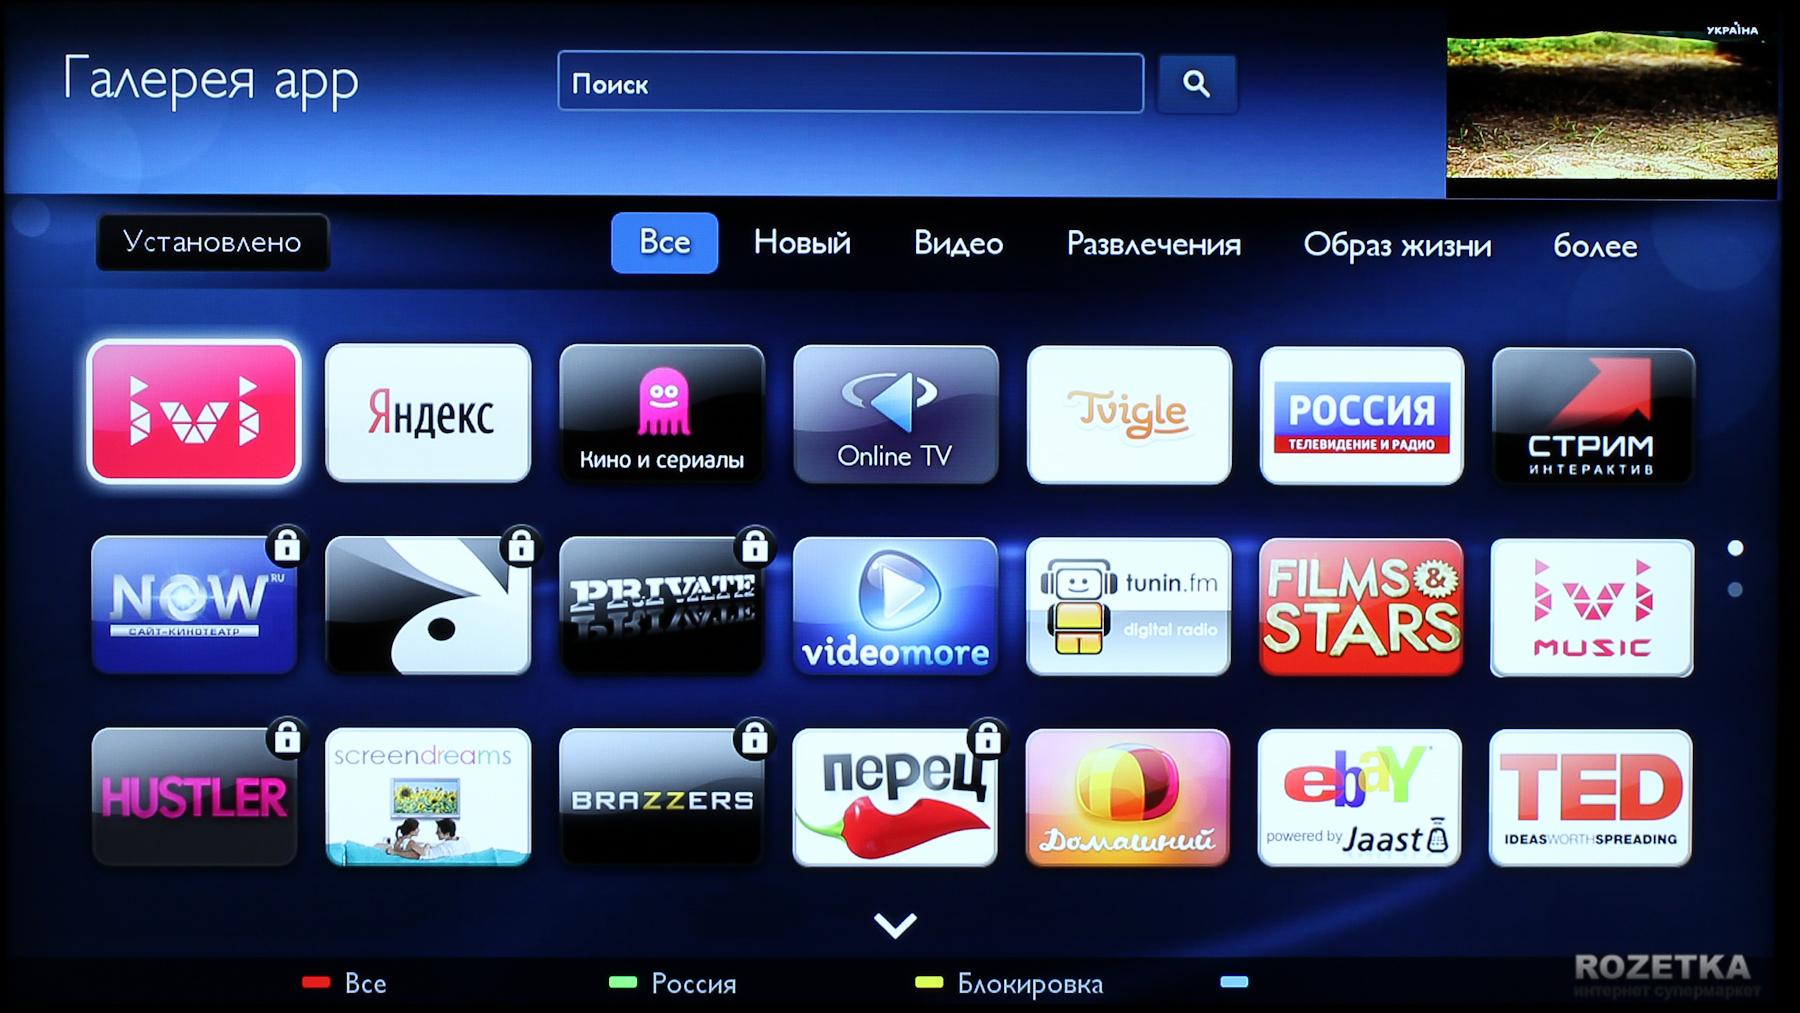 Не знаете, какой браузер для СМАРТ ТВ: Samsung, LG, Android TV выбрать Мы поможем сделать правильный выбор Пошаговая инструкция по установке и обновлению браузера  советы